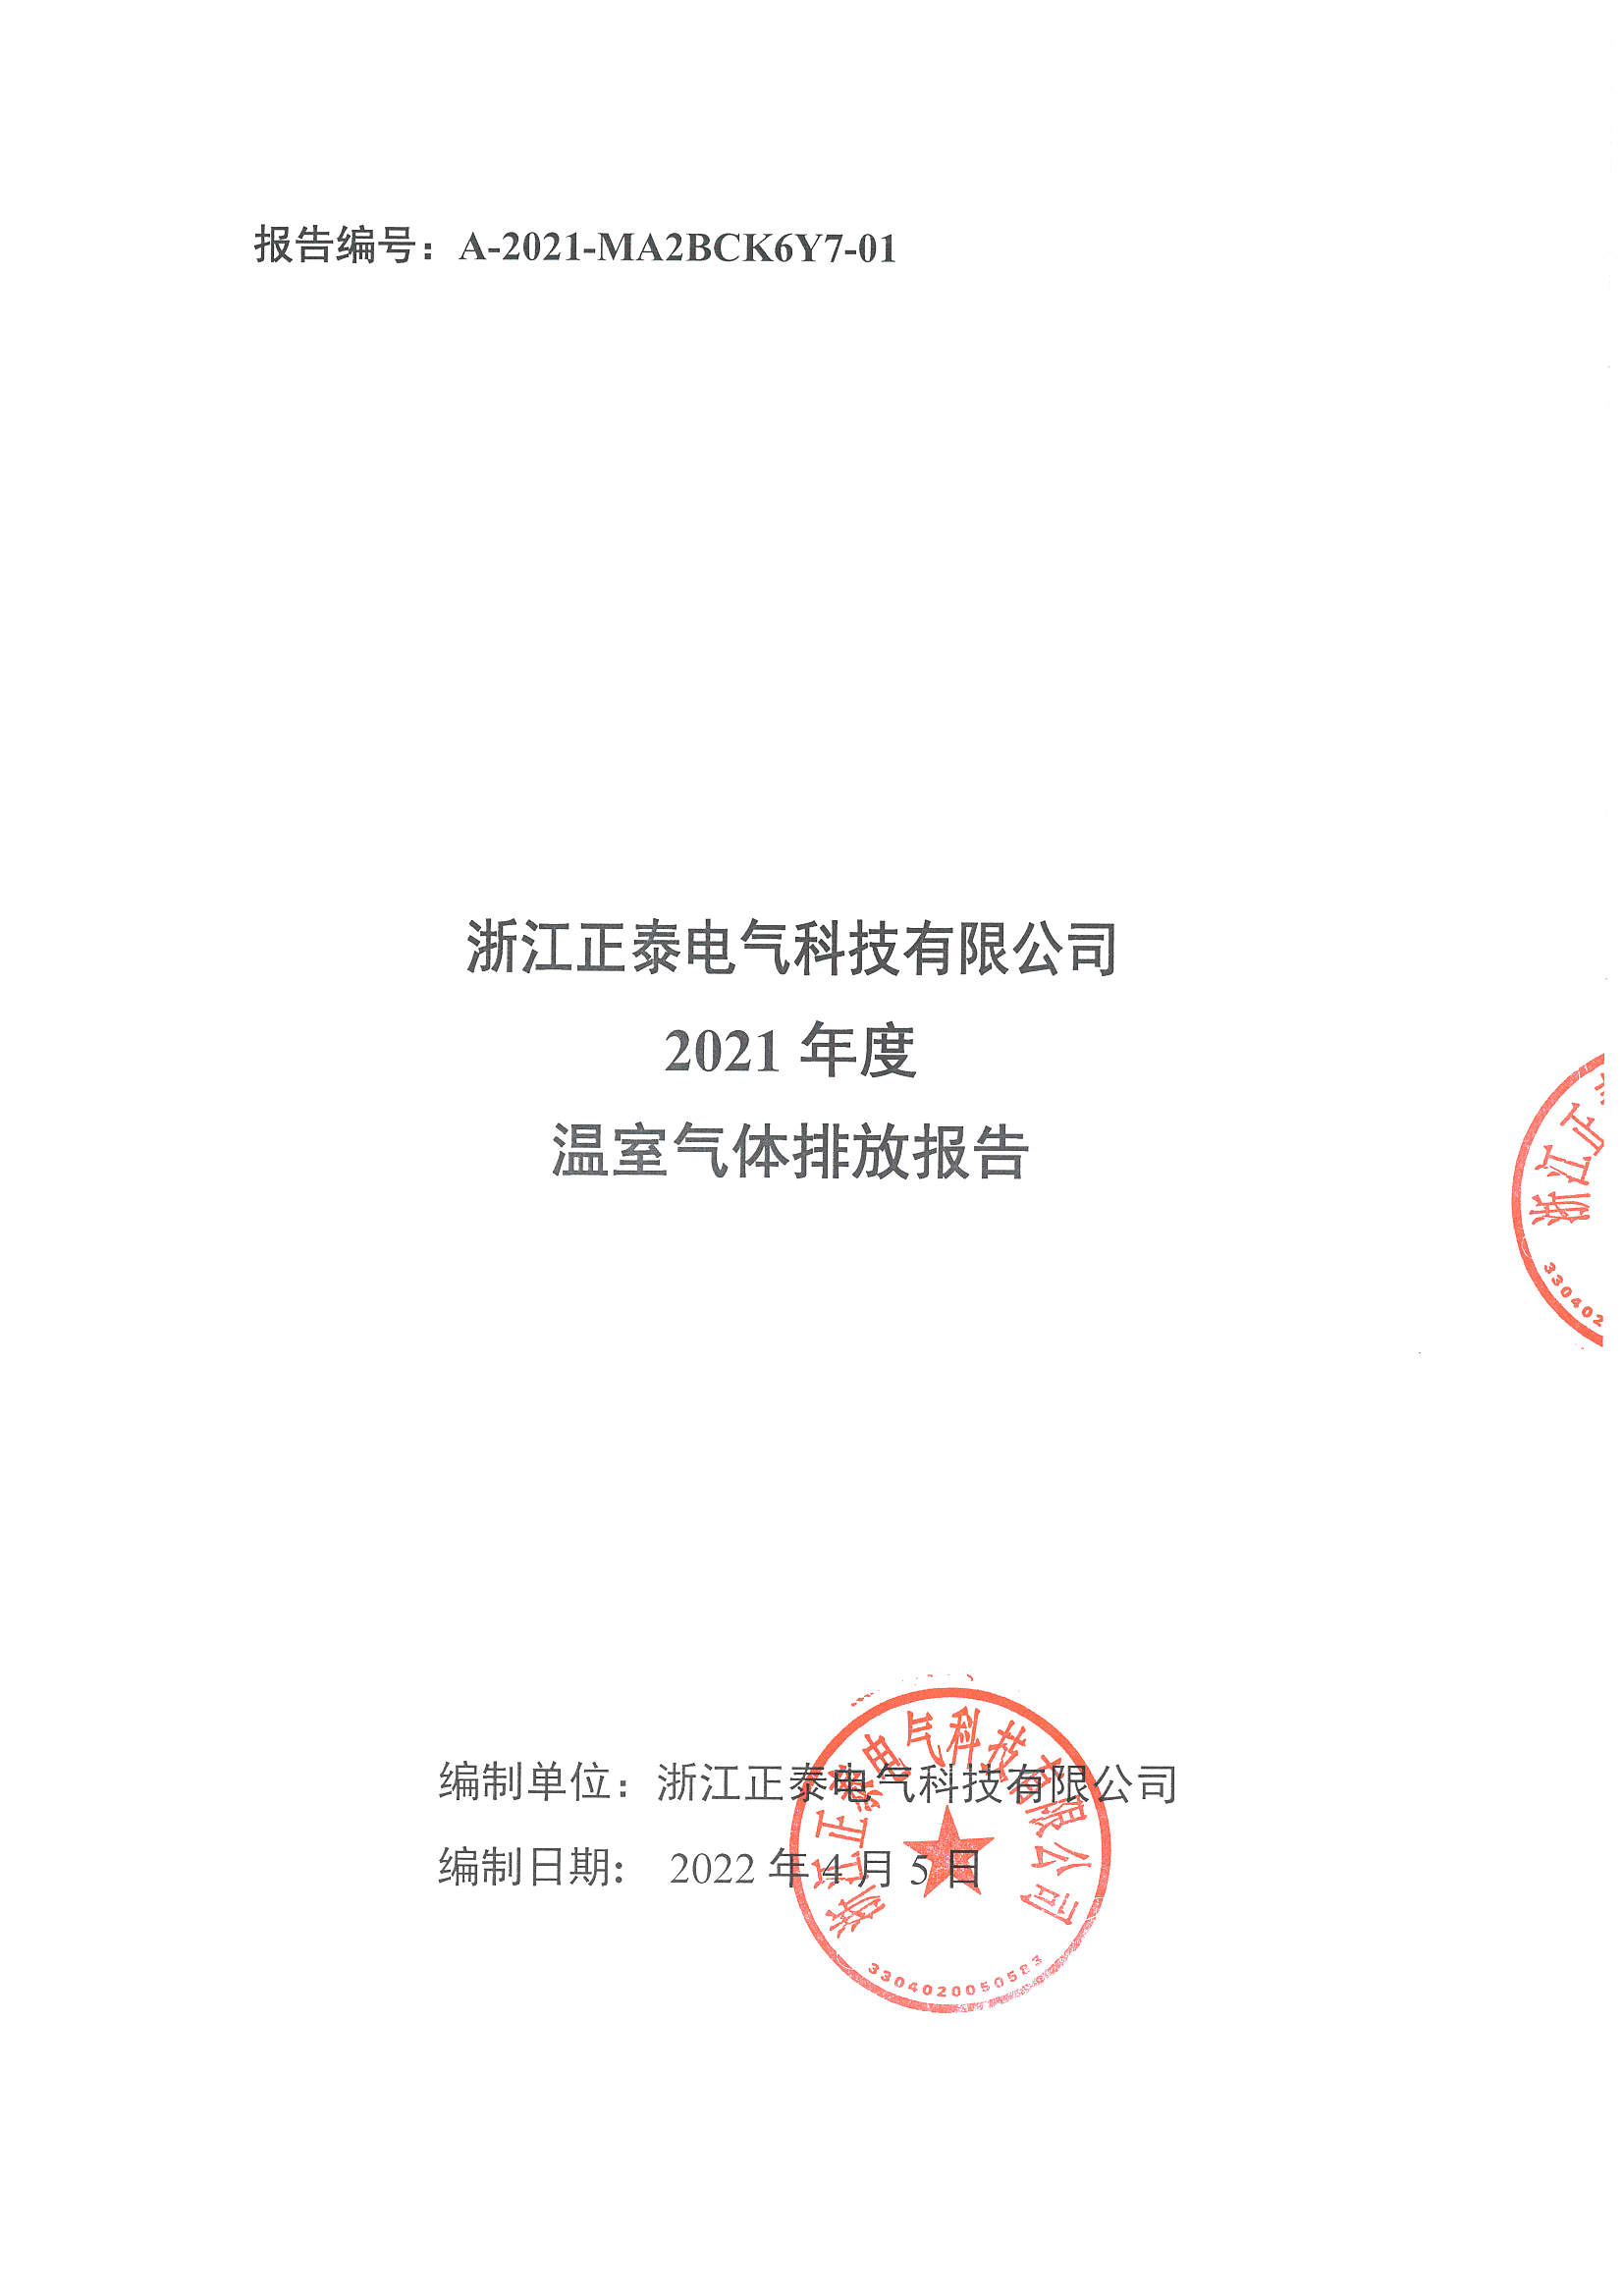 浙江正泰电气科技有限公司2021年度温室气体排放报告_页面_1.jpg